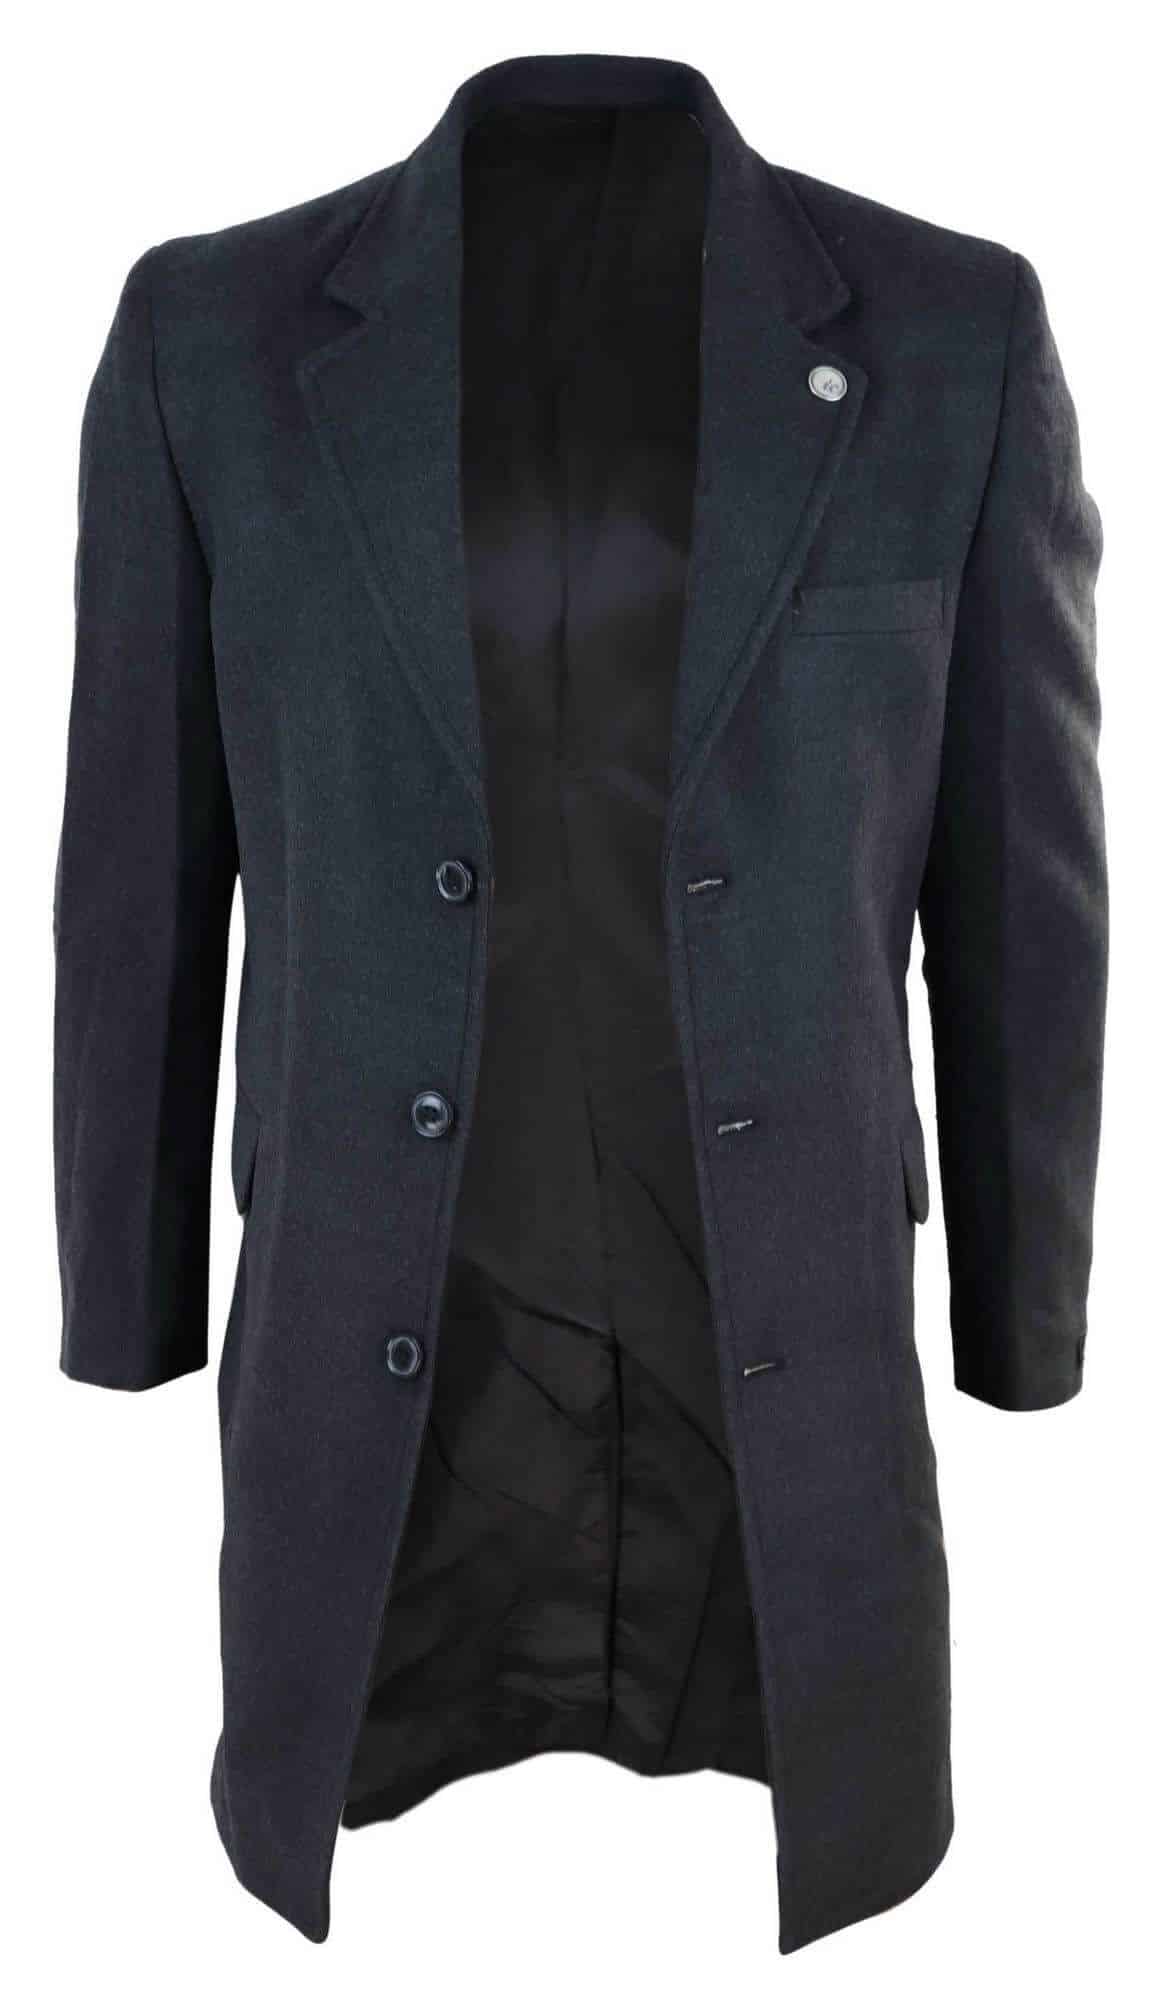 Men's Classic Wool Long Overcoat - Charcoal | Happy Gentleman